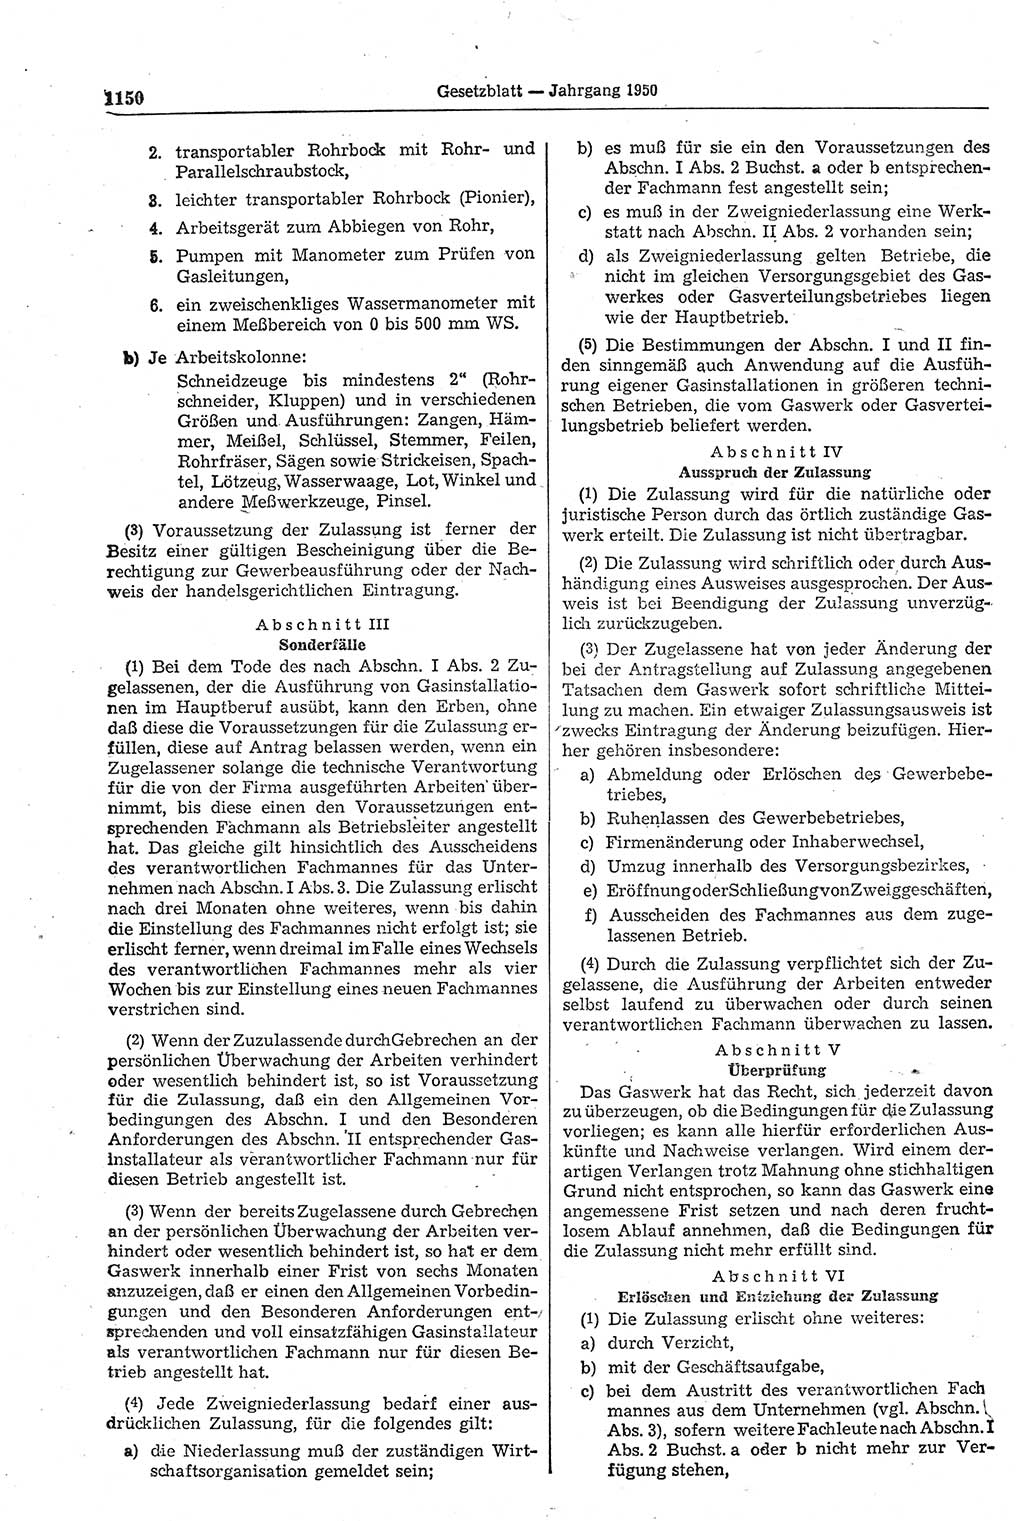 Gesetzblatt (GBl.) der Deutschen Demokratischen Republik (DDR) 1950, Seite 1150 (GBl. DDR 1950, S. 1150)